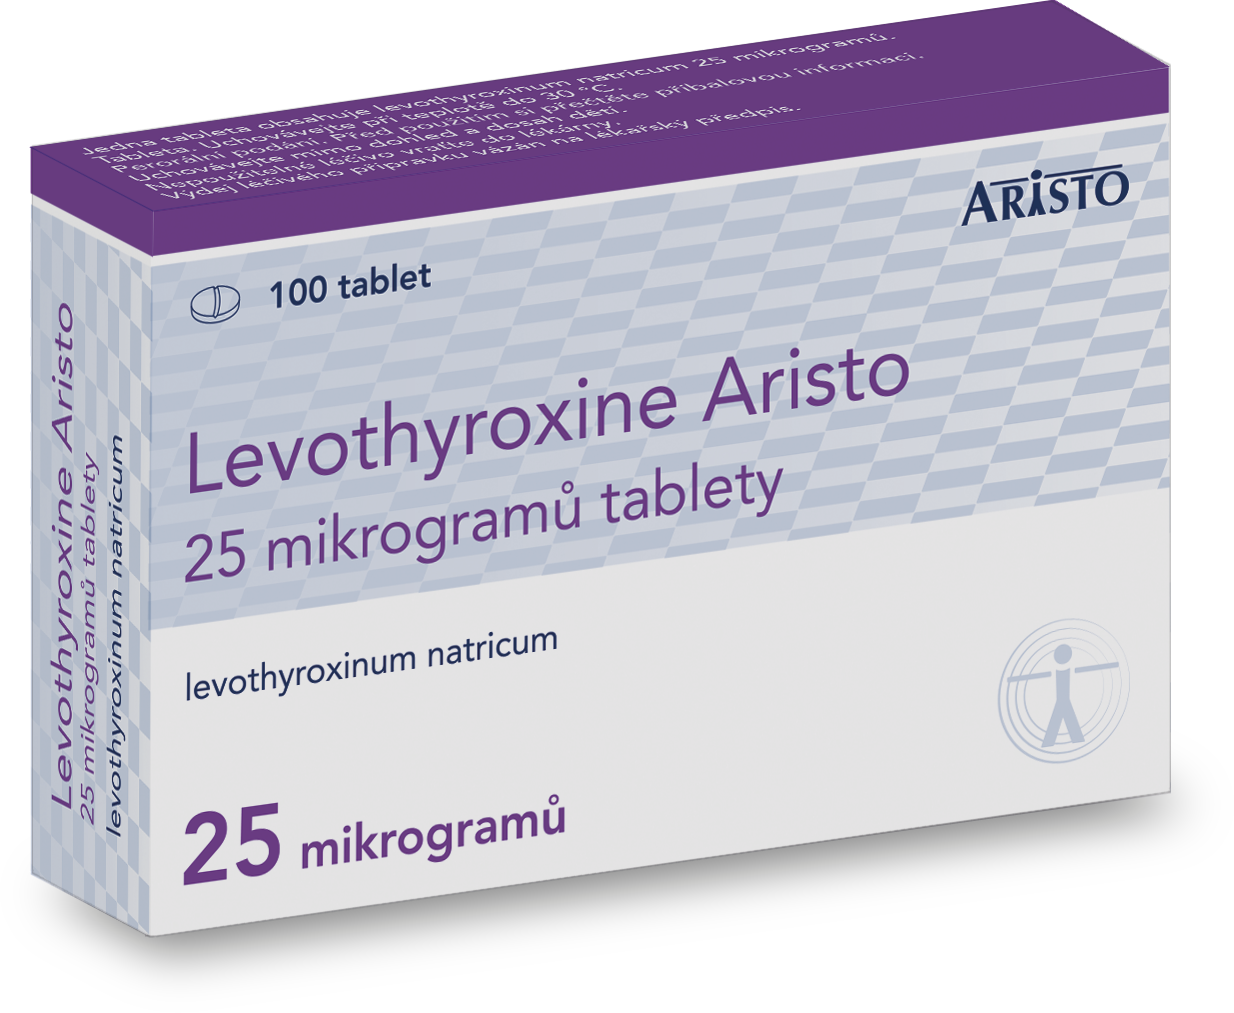 Levothyroxine Aristo 25 mikrogramů